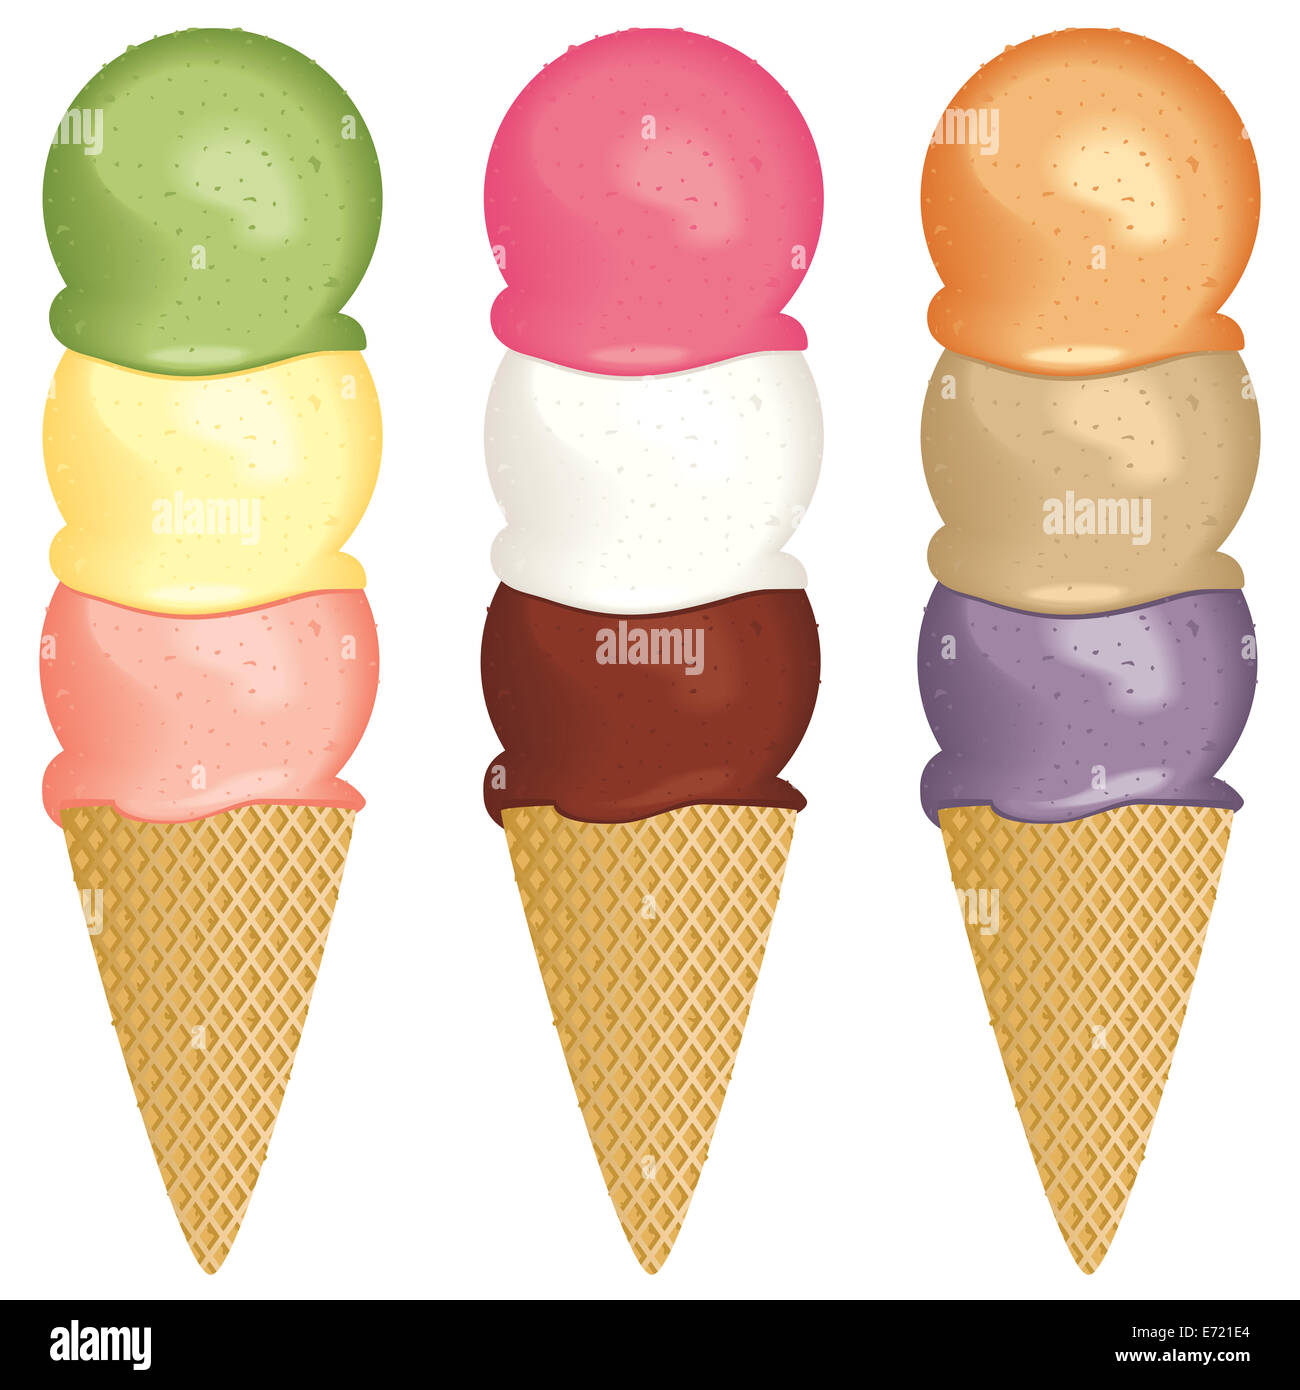 https://c8.alamy.com/comp/E721E4/a-set-of-three-scoop-ice-cream-cones-E721E4.jpg